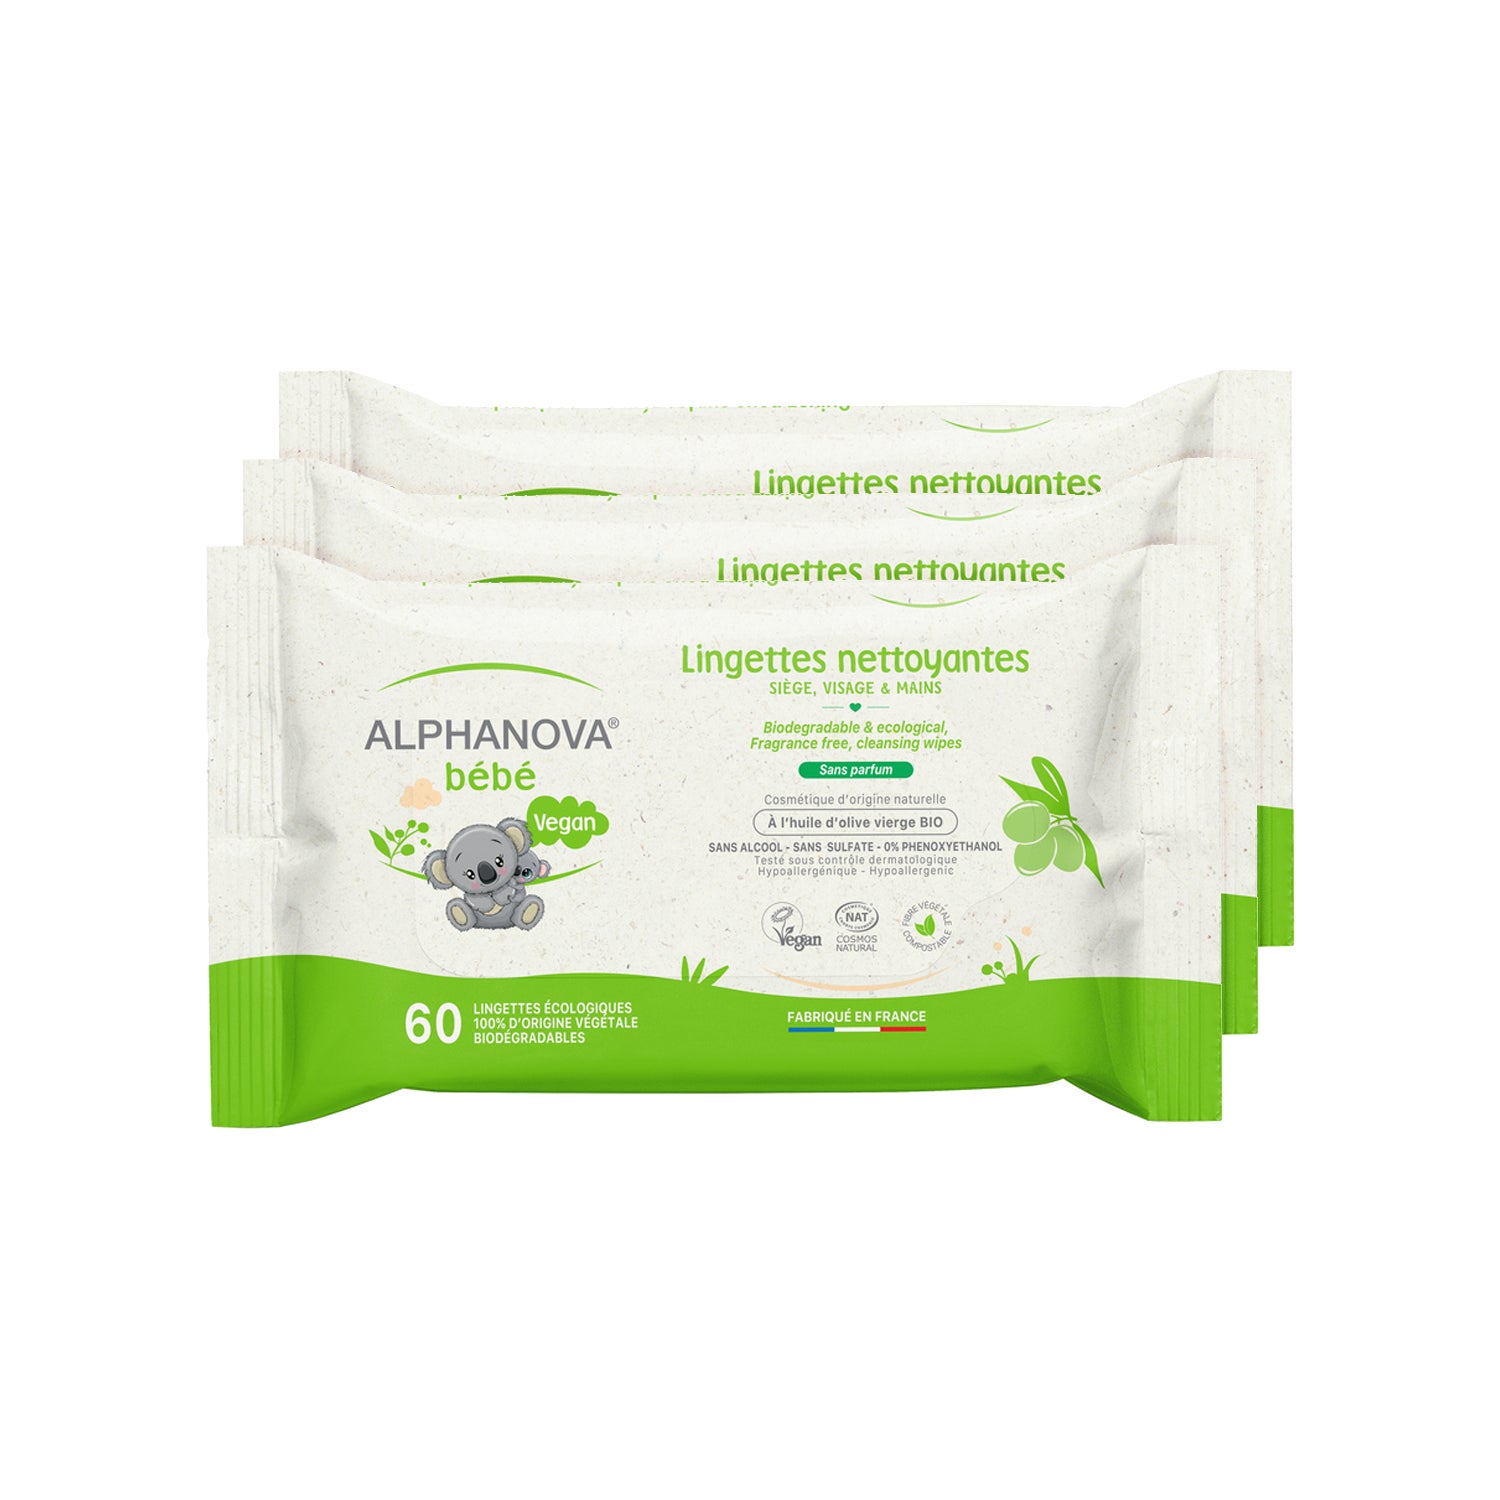 Compra Suavinex Pack para Bebé 100% Biodegradables, 25 Toallitas al mejor  precio.